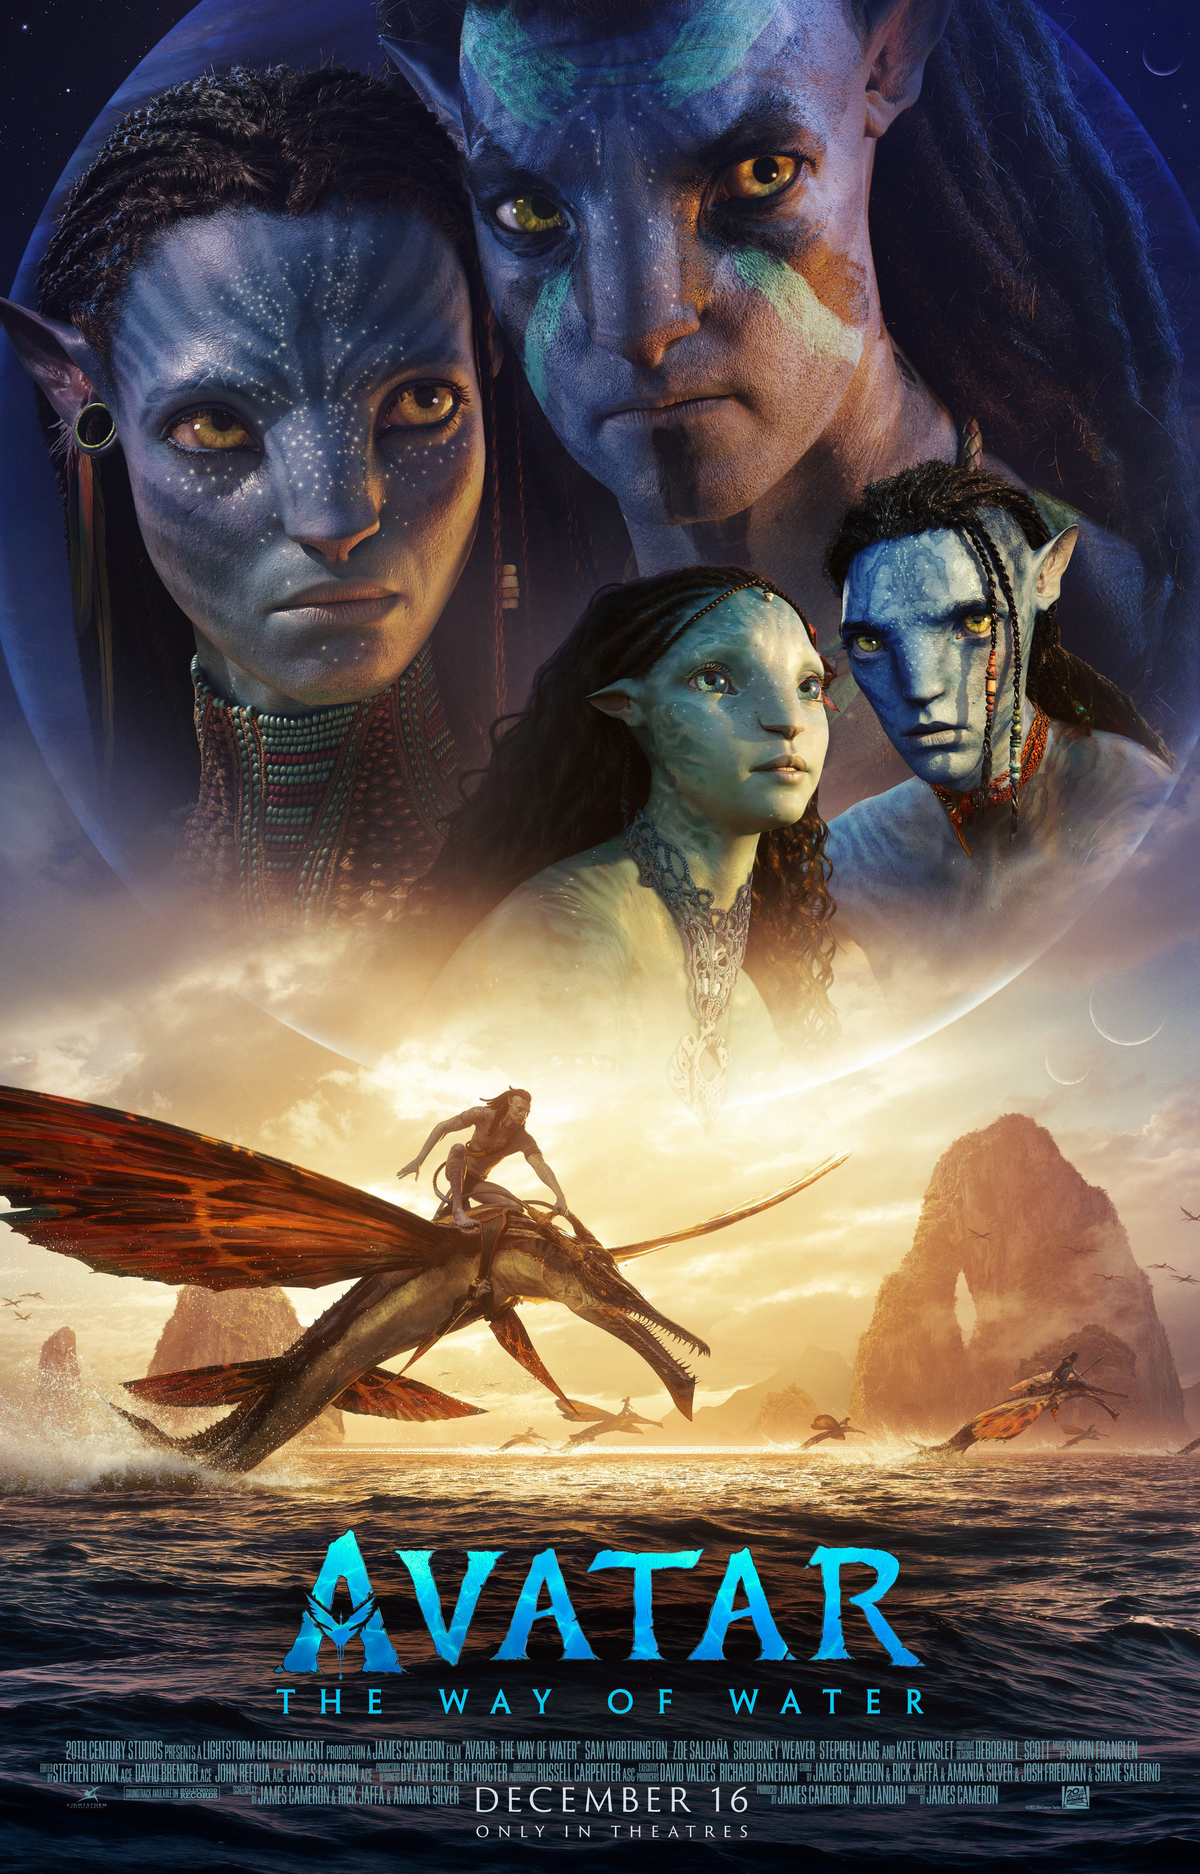 Avatar: Con đường của nước: Bạn đã sẵn sàng bị cuốn hút vào một cuộc phiêu lưu đầy màu sắc và phép thuật? Hình ảnh này sẽ đưa bạn đến vào thế giới lạ kỳ và đầy cảm xúc của \